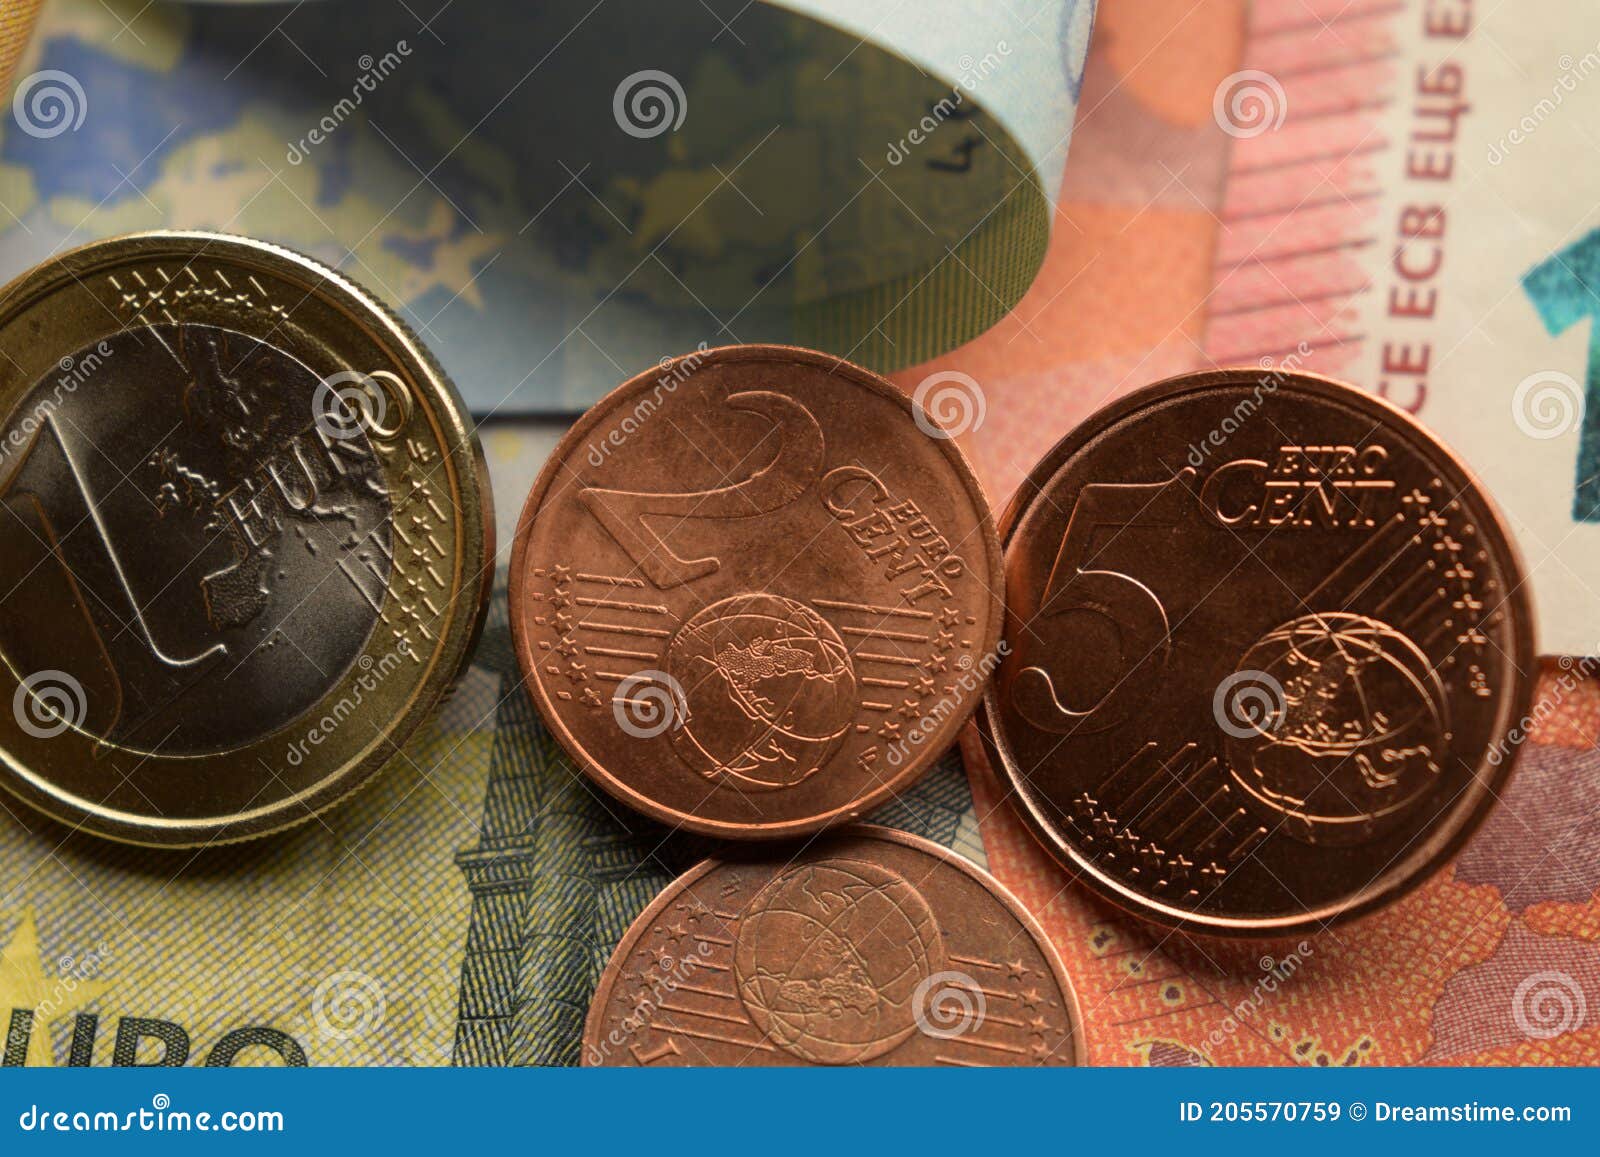 硬币20欧分正反 库存图片. 图片 包括有 编号, 货币, 替换, 宏指令, 商务, 投资, 硬币, 背包 - 165224621